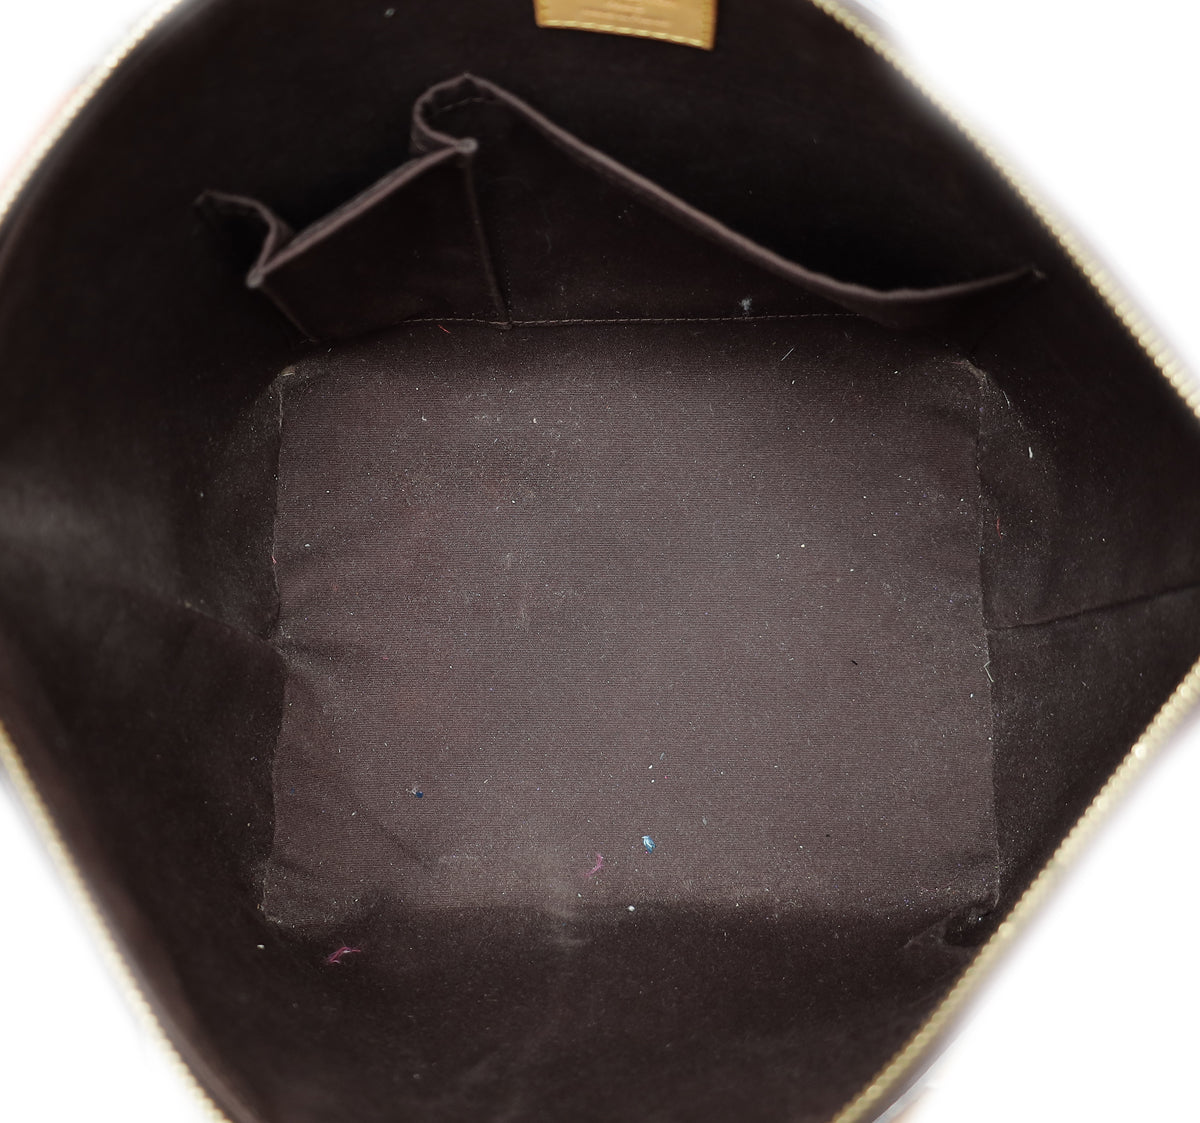 louis vuitton bellevue tote bag (fl0110), pm size, amarante monogram vernis,  with dust cover